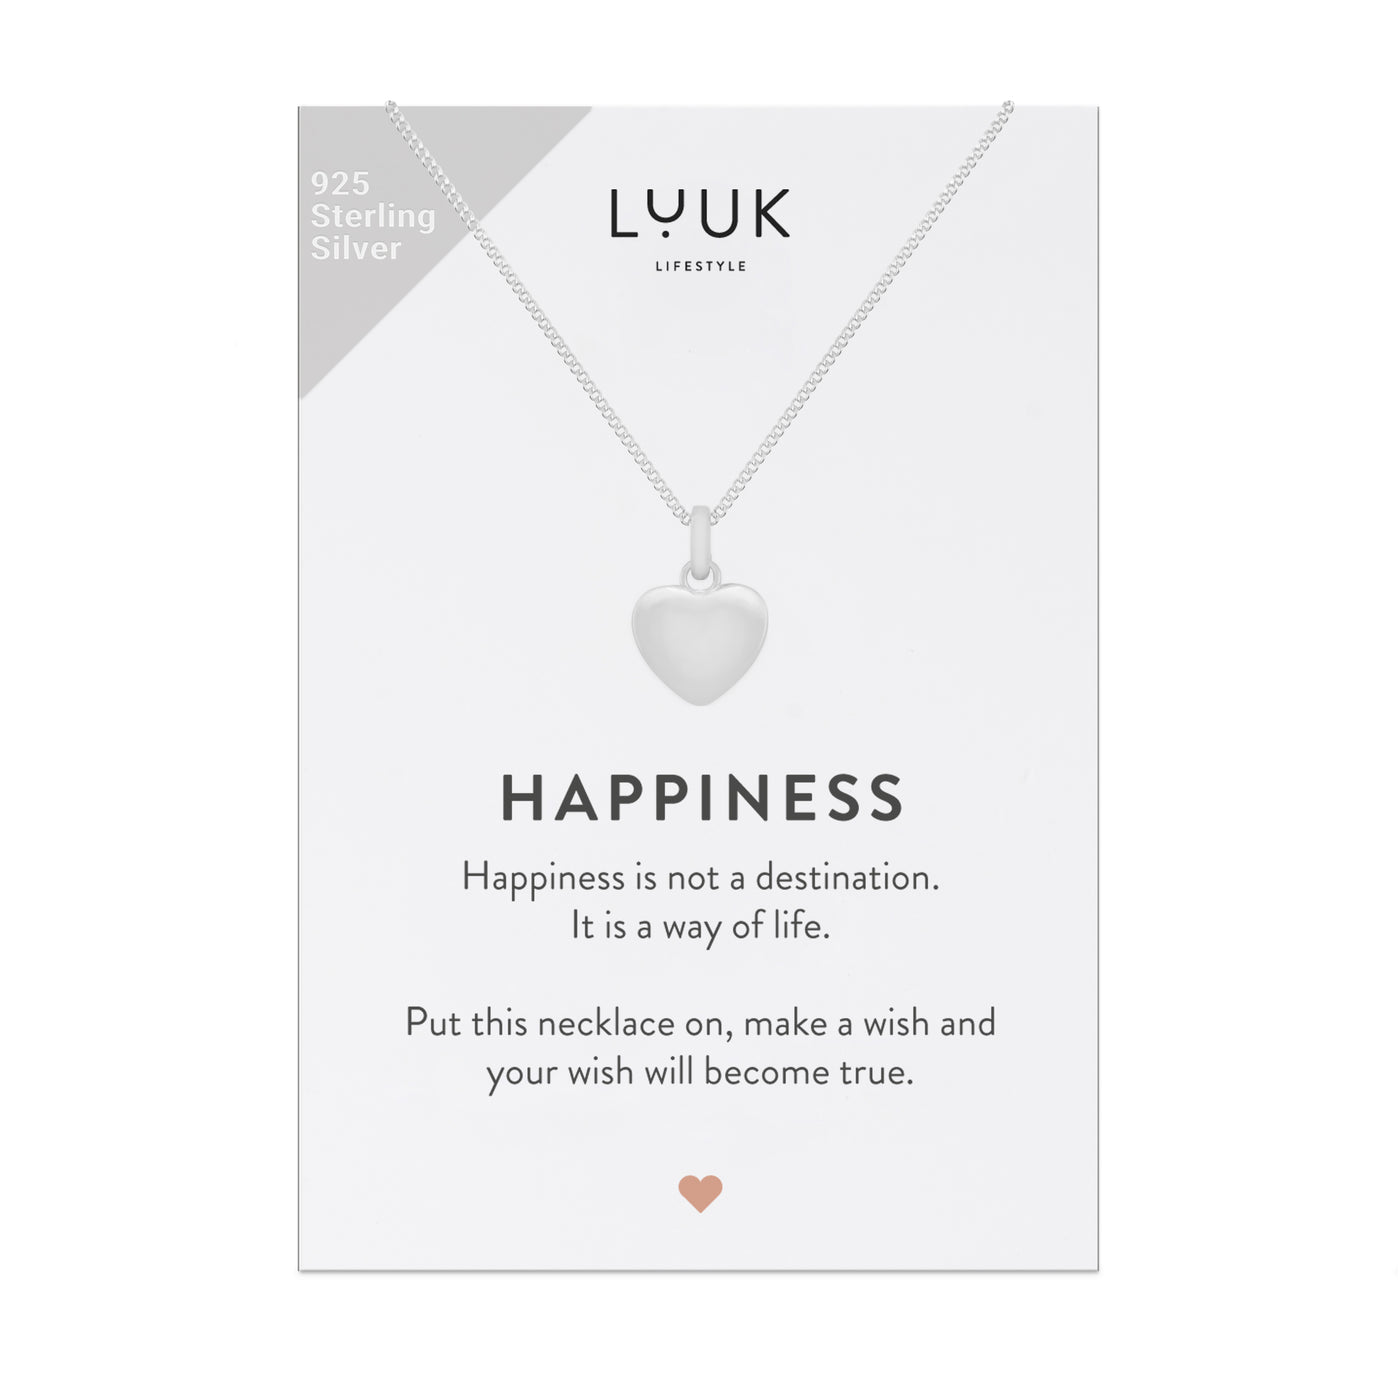 Halskette mit Herz Anhänger in 925er Sterling Silber auf Happiness Spruchkarte von der Marke Luuk Lifestyle 